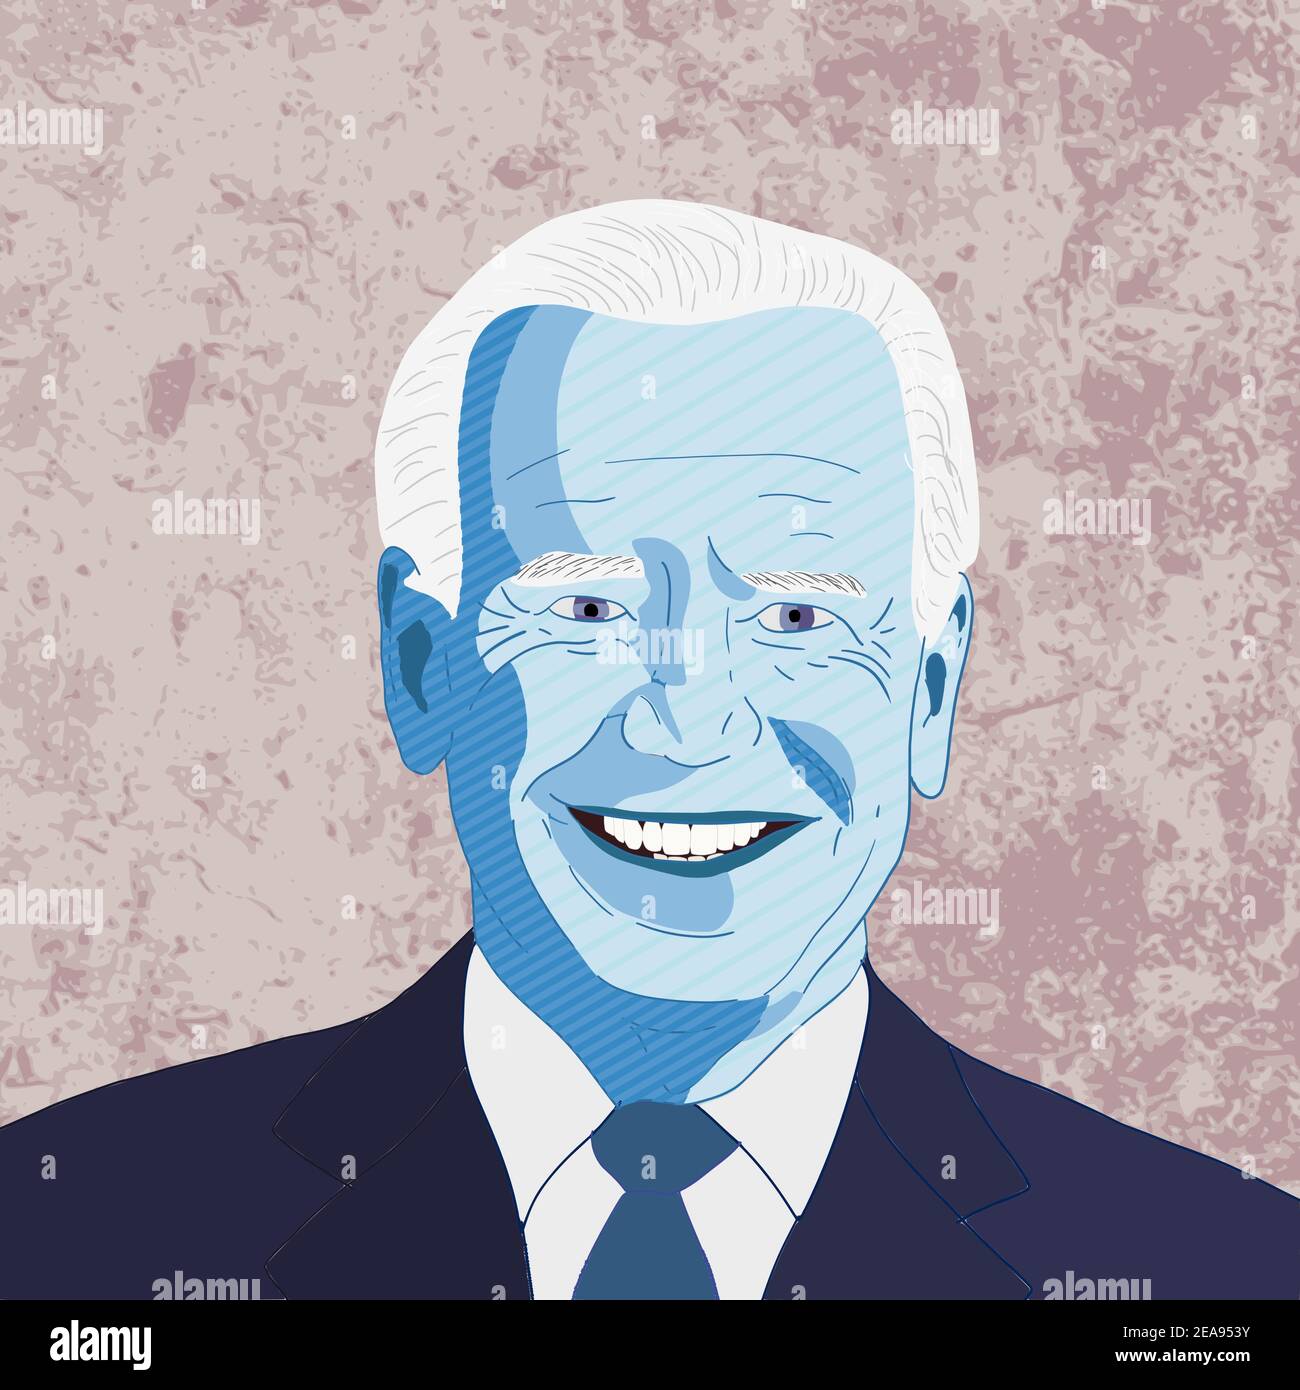 WARSCHAU, POLEN - 8. FEBRUAR 2021: Digital handgezeichnetes Porträt von Joe Biden, 46th Präsident der Vereinigten Staaten, gewählt 2020. Stock Vektor